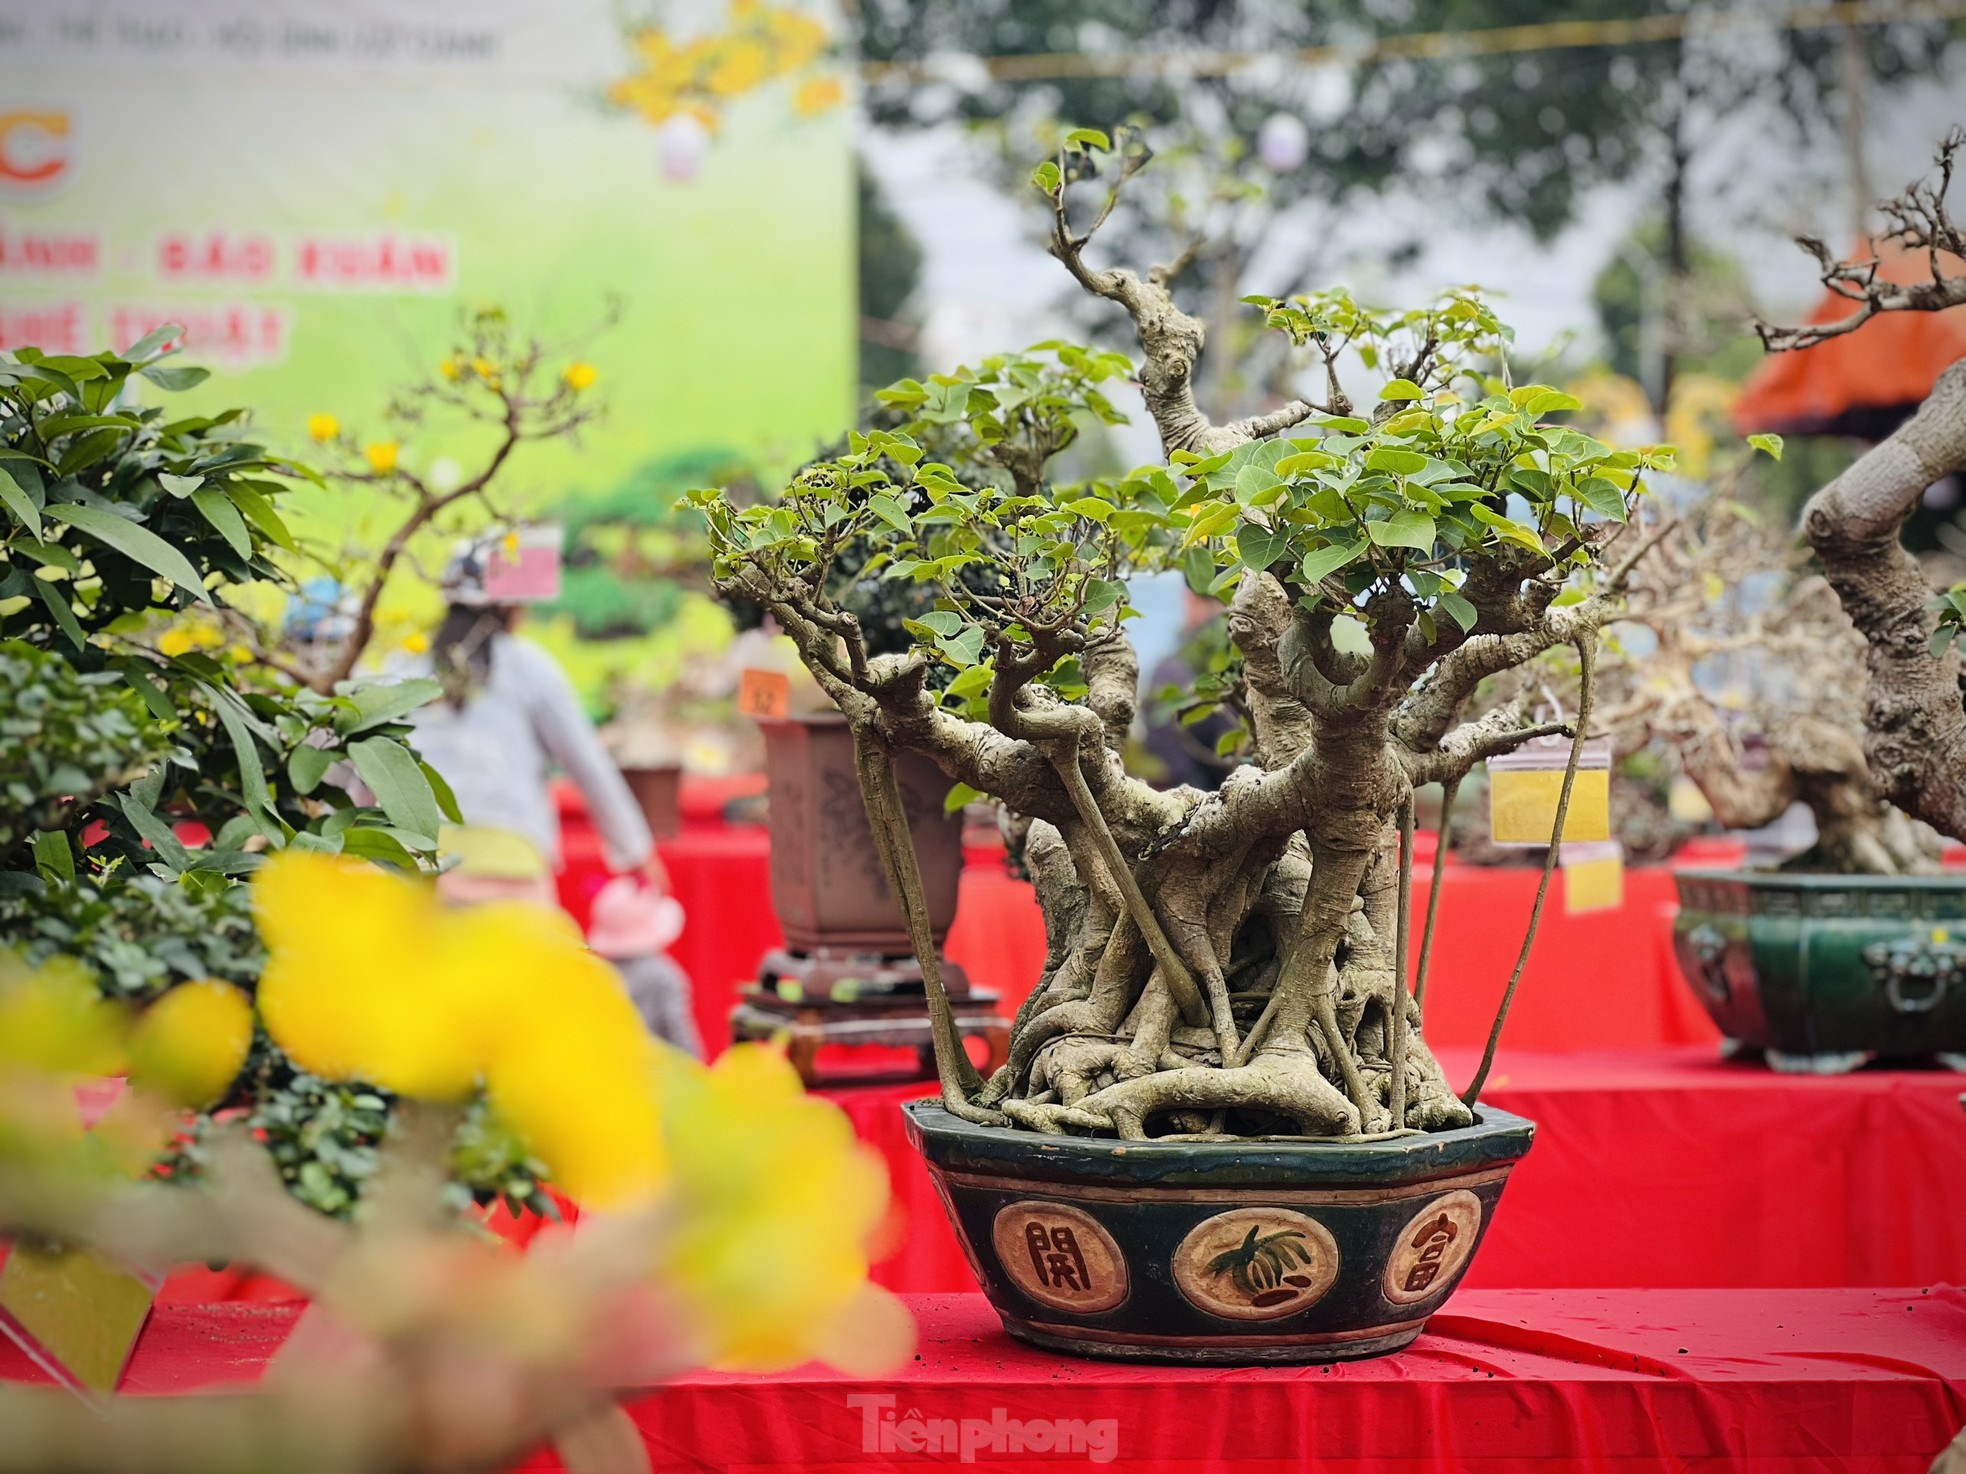 Dàn bonsai độc lạ, giá lên đến 500 triệu đồng ở Quảng Ngãi - Ảnh 17.